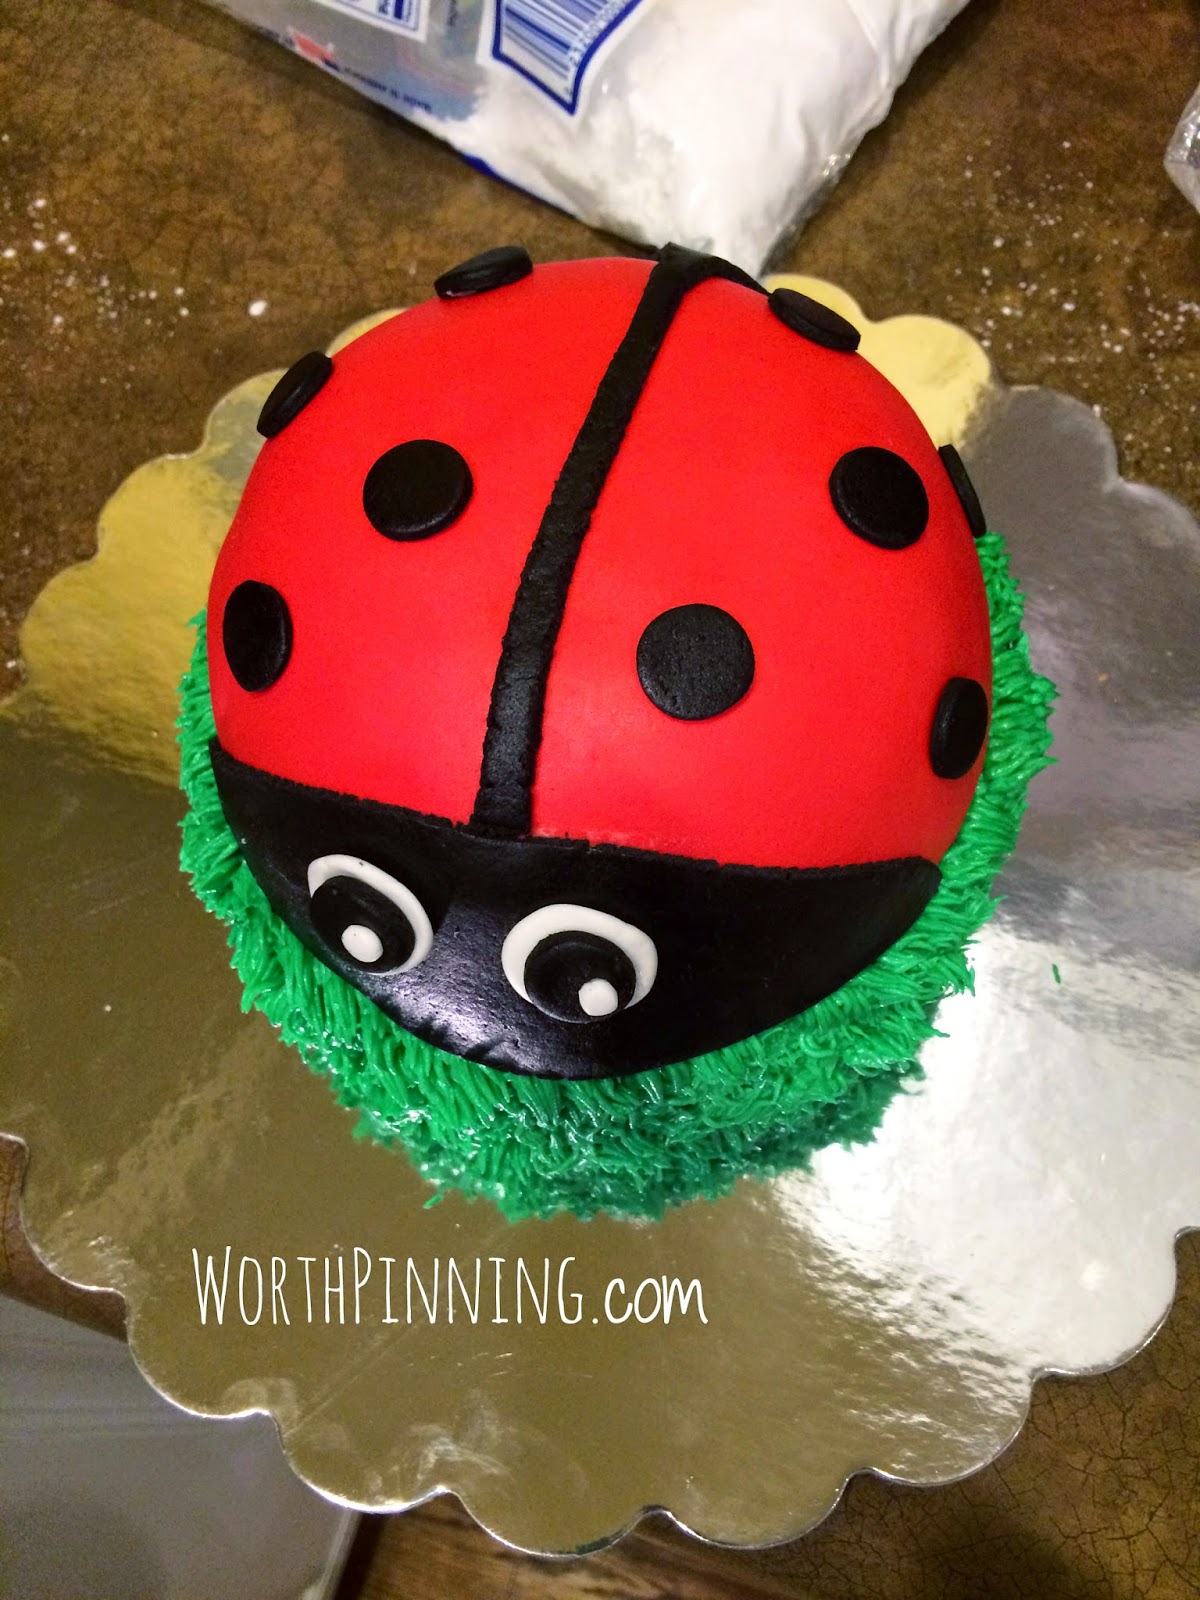 Cake with Fondant Ladybugs